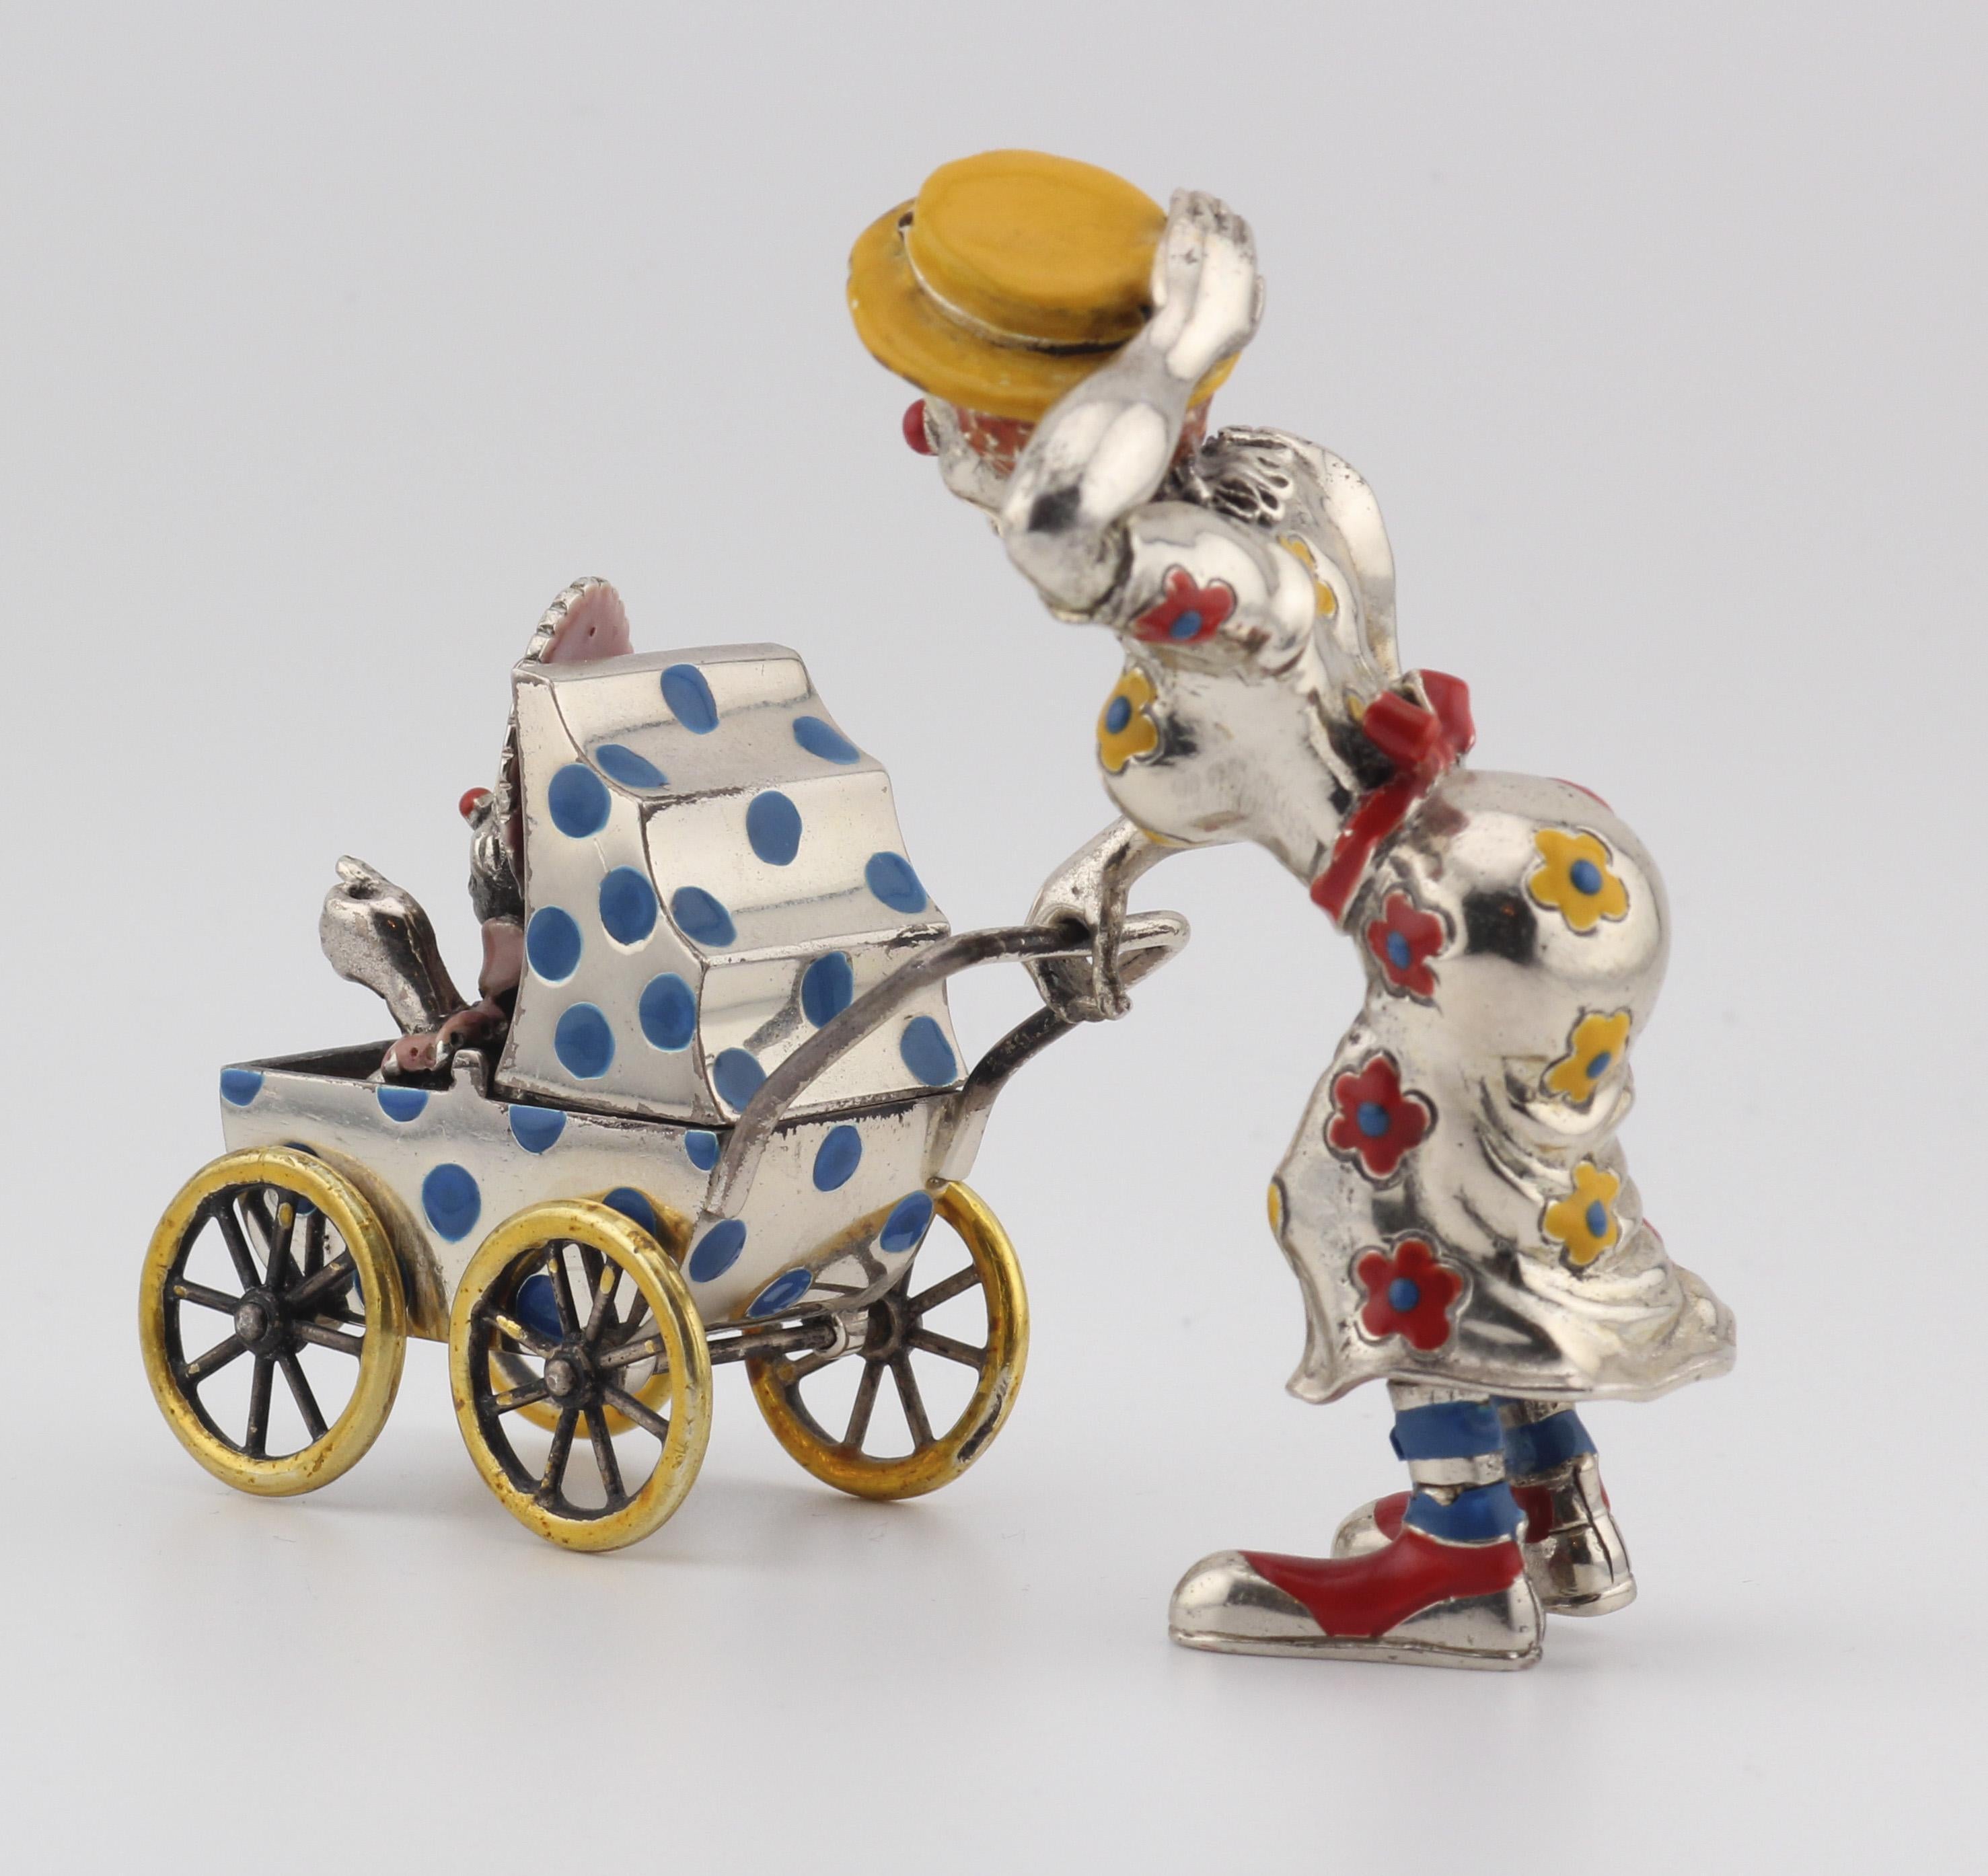 Treten Sie ein in die bezaubernde Welt der Launenhaftigkeit und Handwerkskunst mit dieser Tiffany & Co. Silber & Emaille Zirkus Clown Mutter & Baby in Kutsche Figurine. Diese sorgfältig gefertigte Figur ist ein Beweis für das Vermächtnis von Tiffany